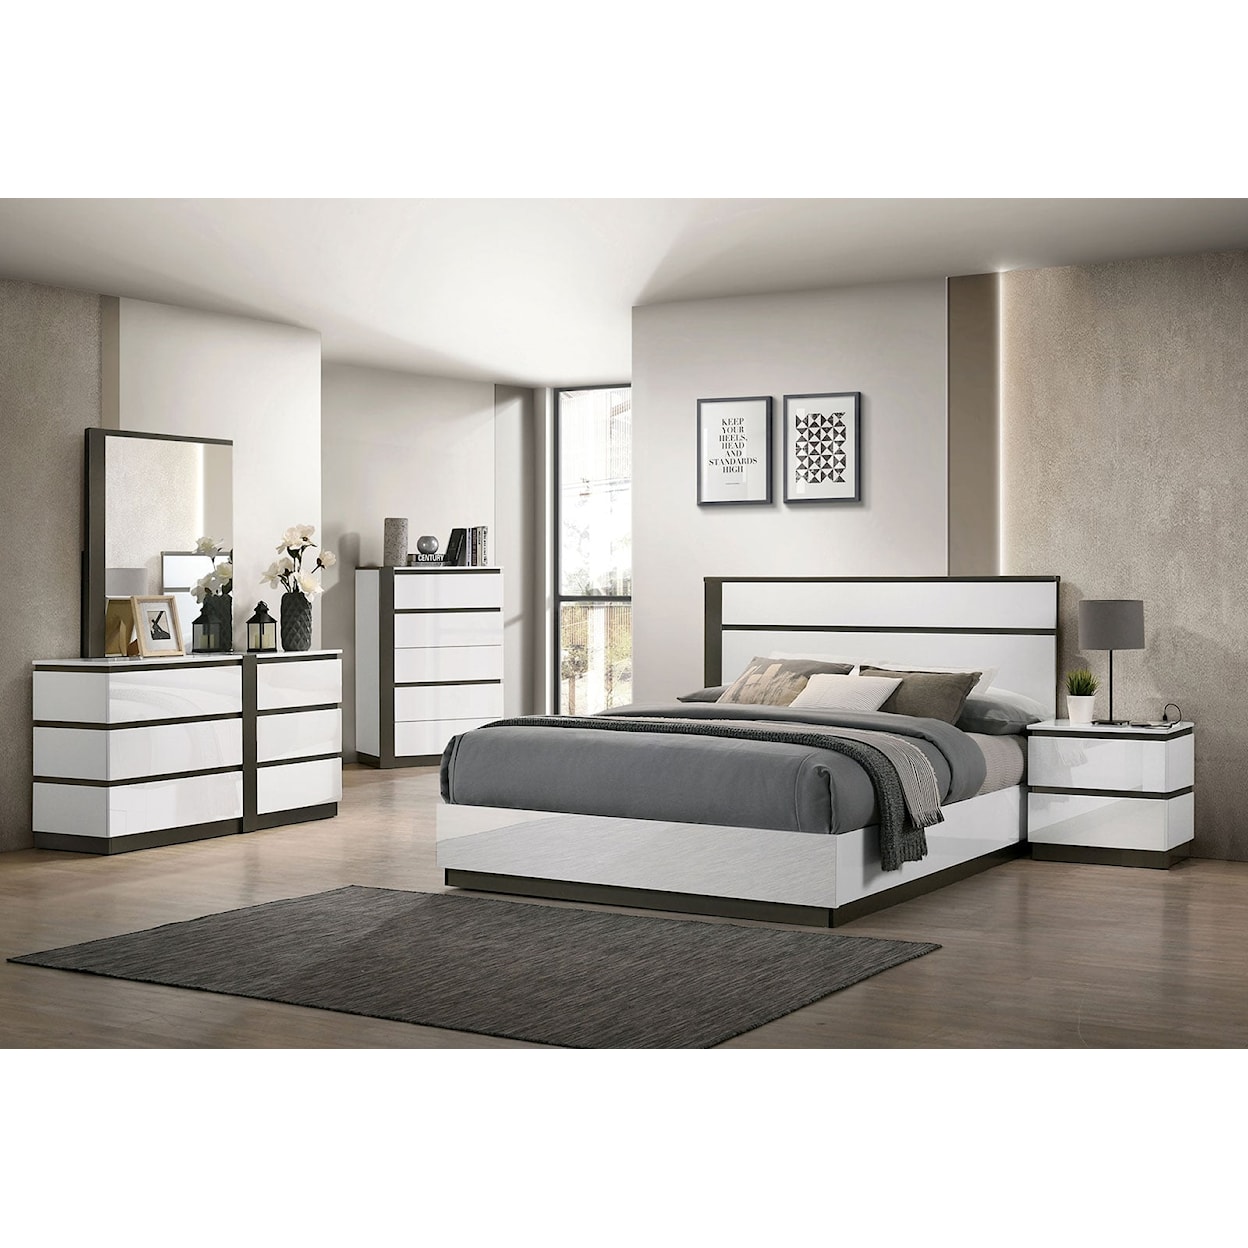 Furniture of America Birsfelden 5-Piece Queen Bedroom Set with 2 Nightstands